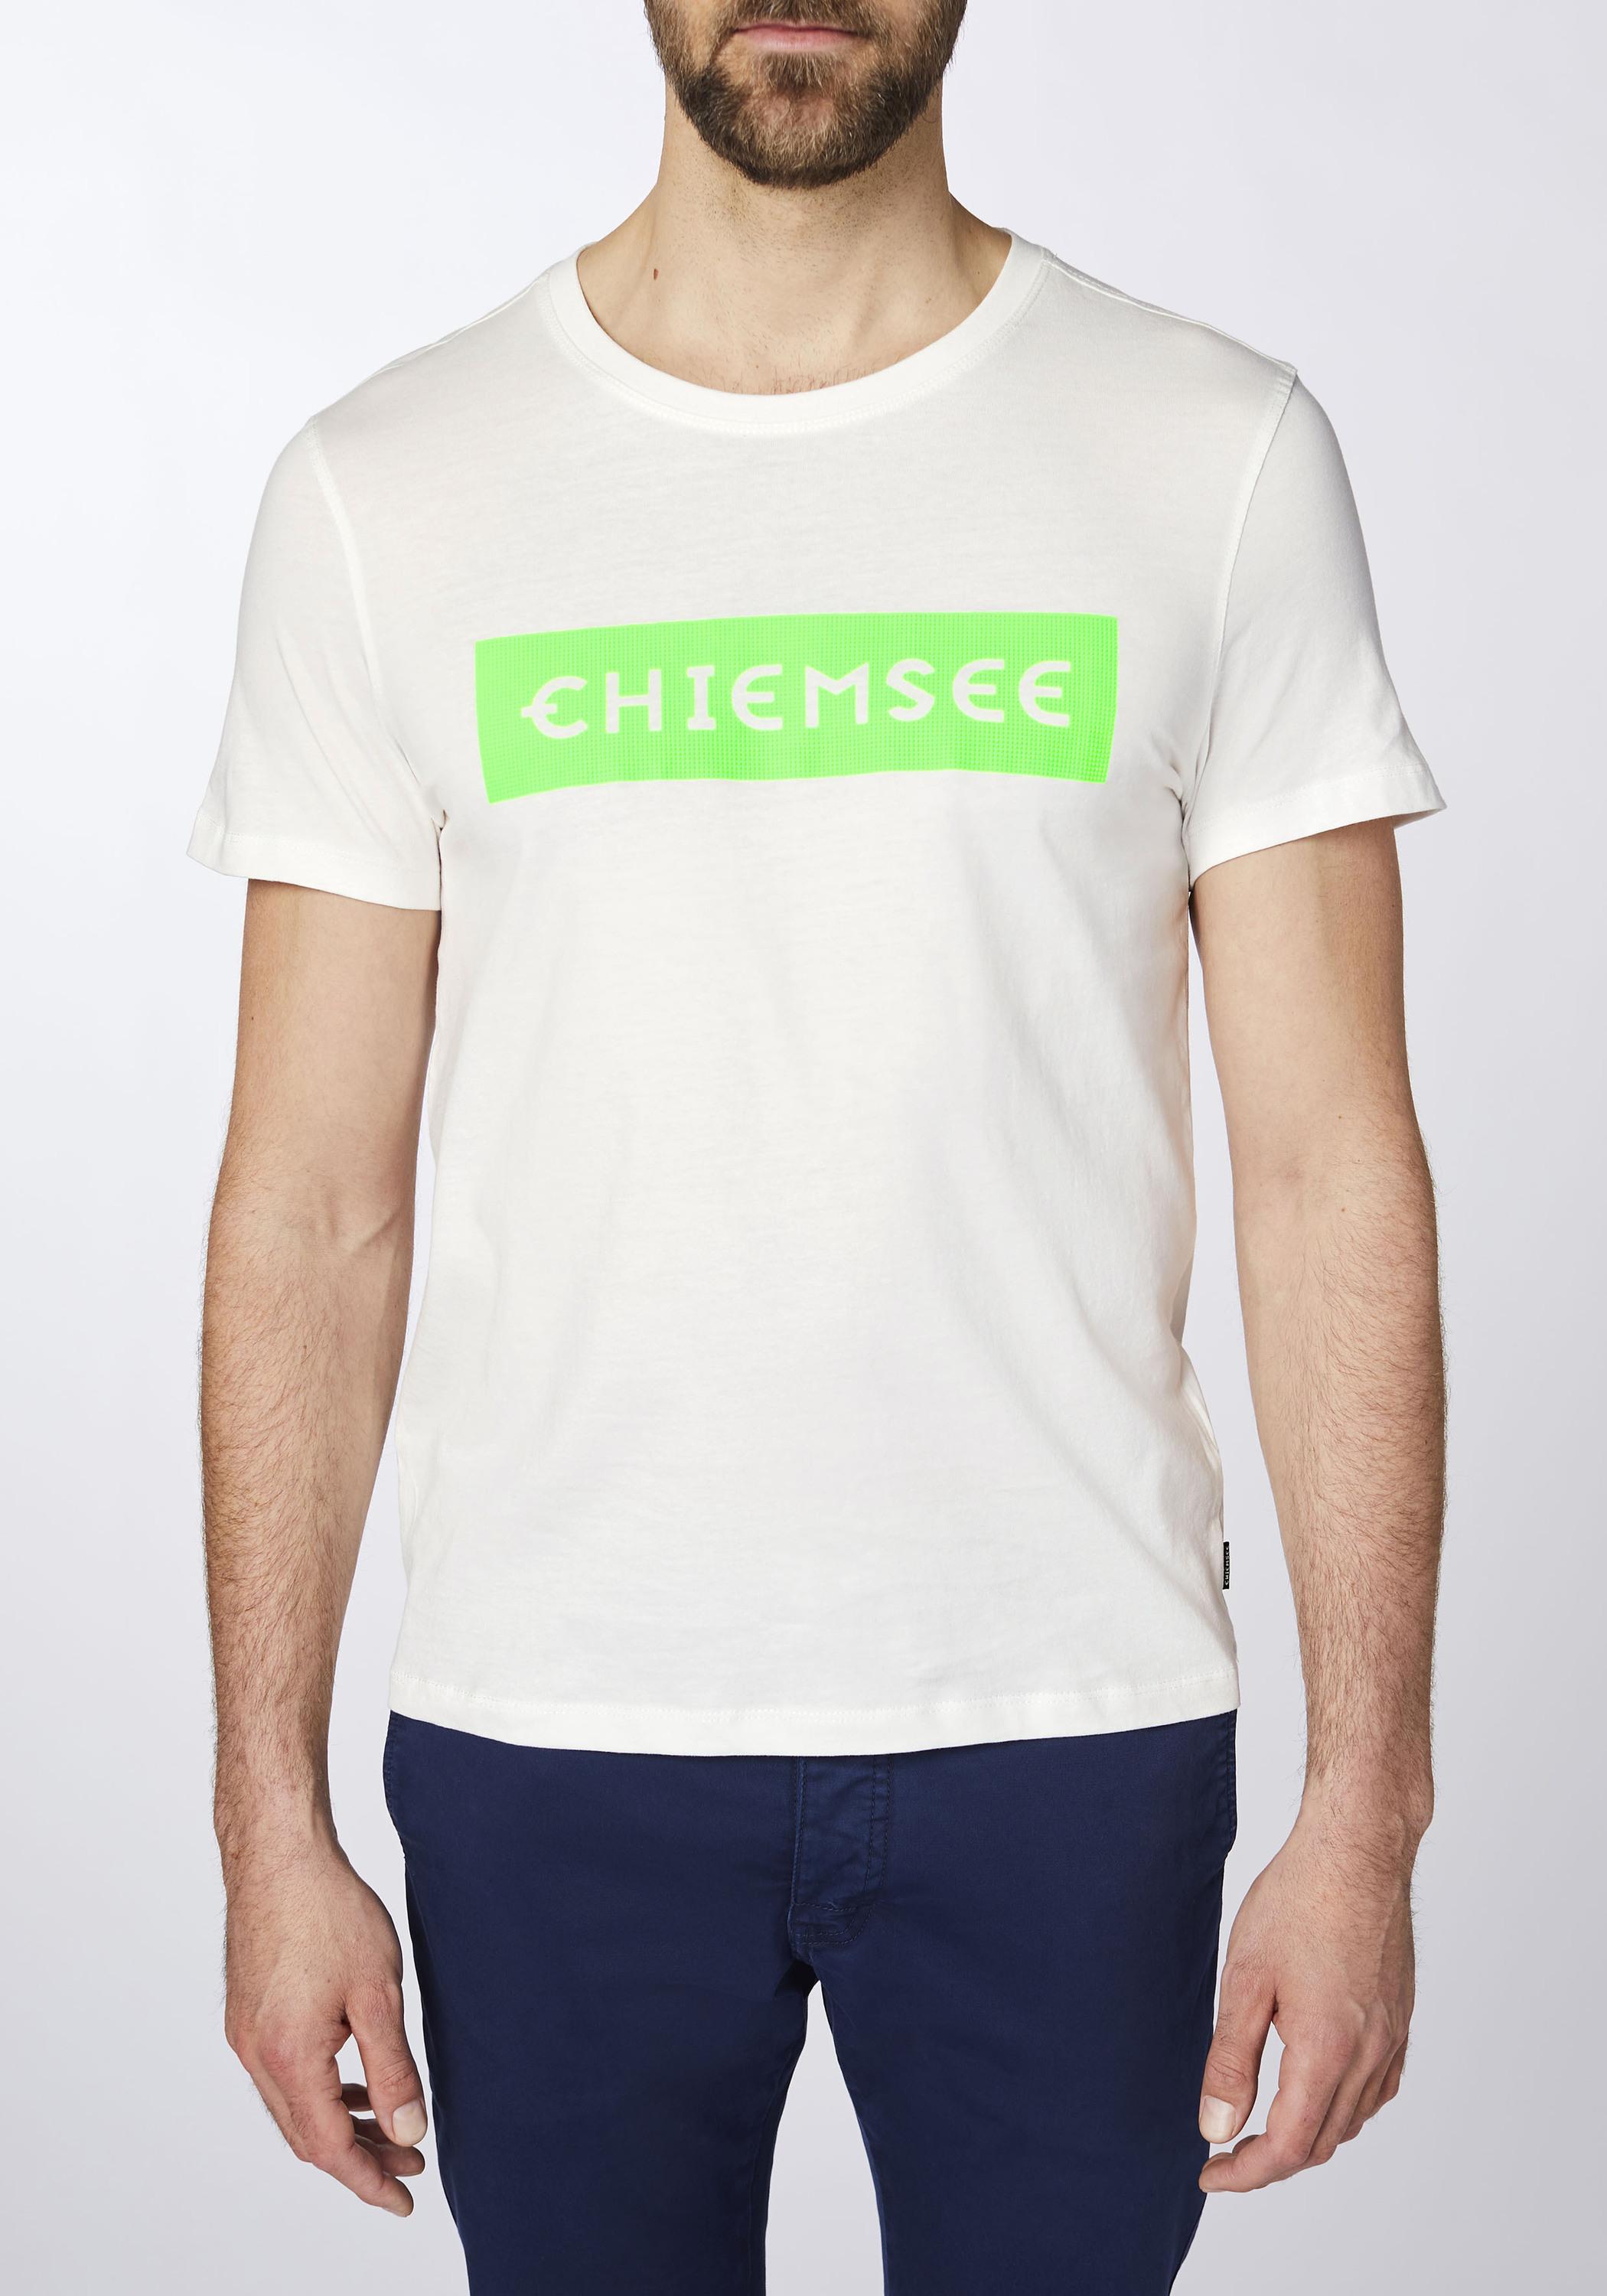 Chiemsee T-Shirt kaufen T-Shirt Grn SportScheck Herren Online Shop Wht/Md im von Dif